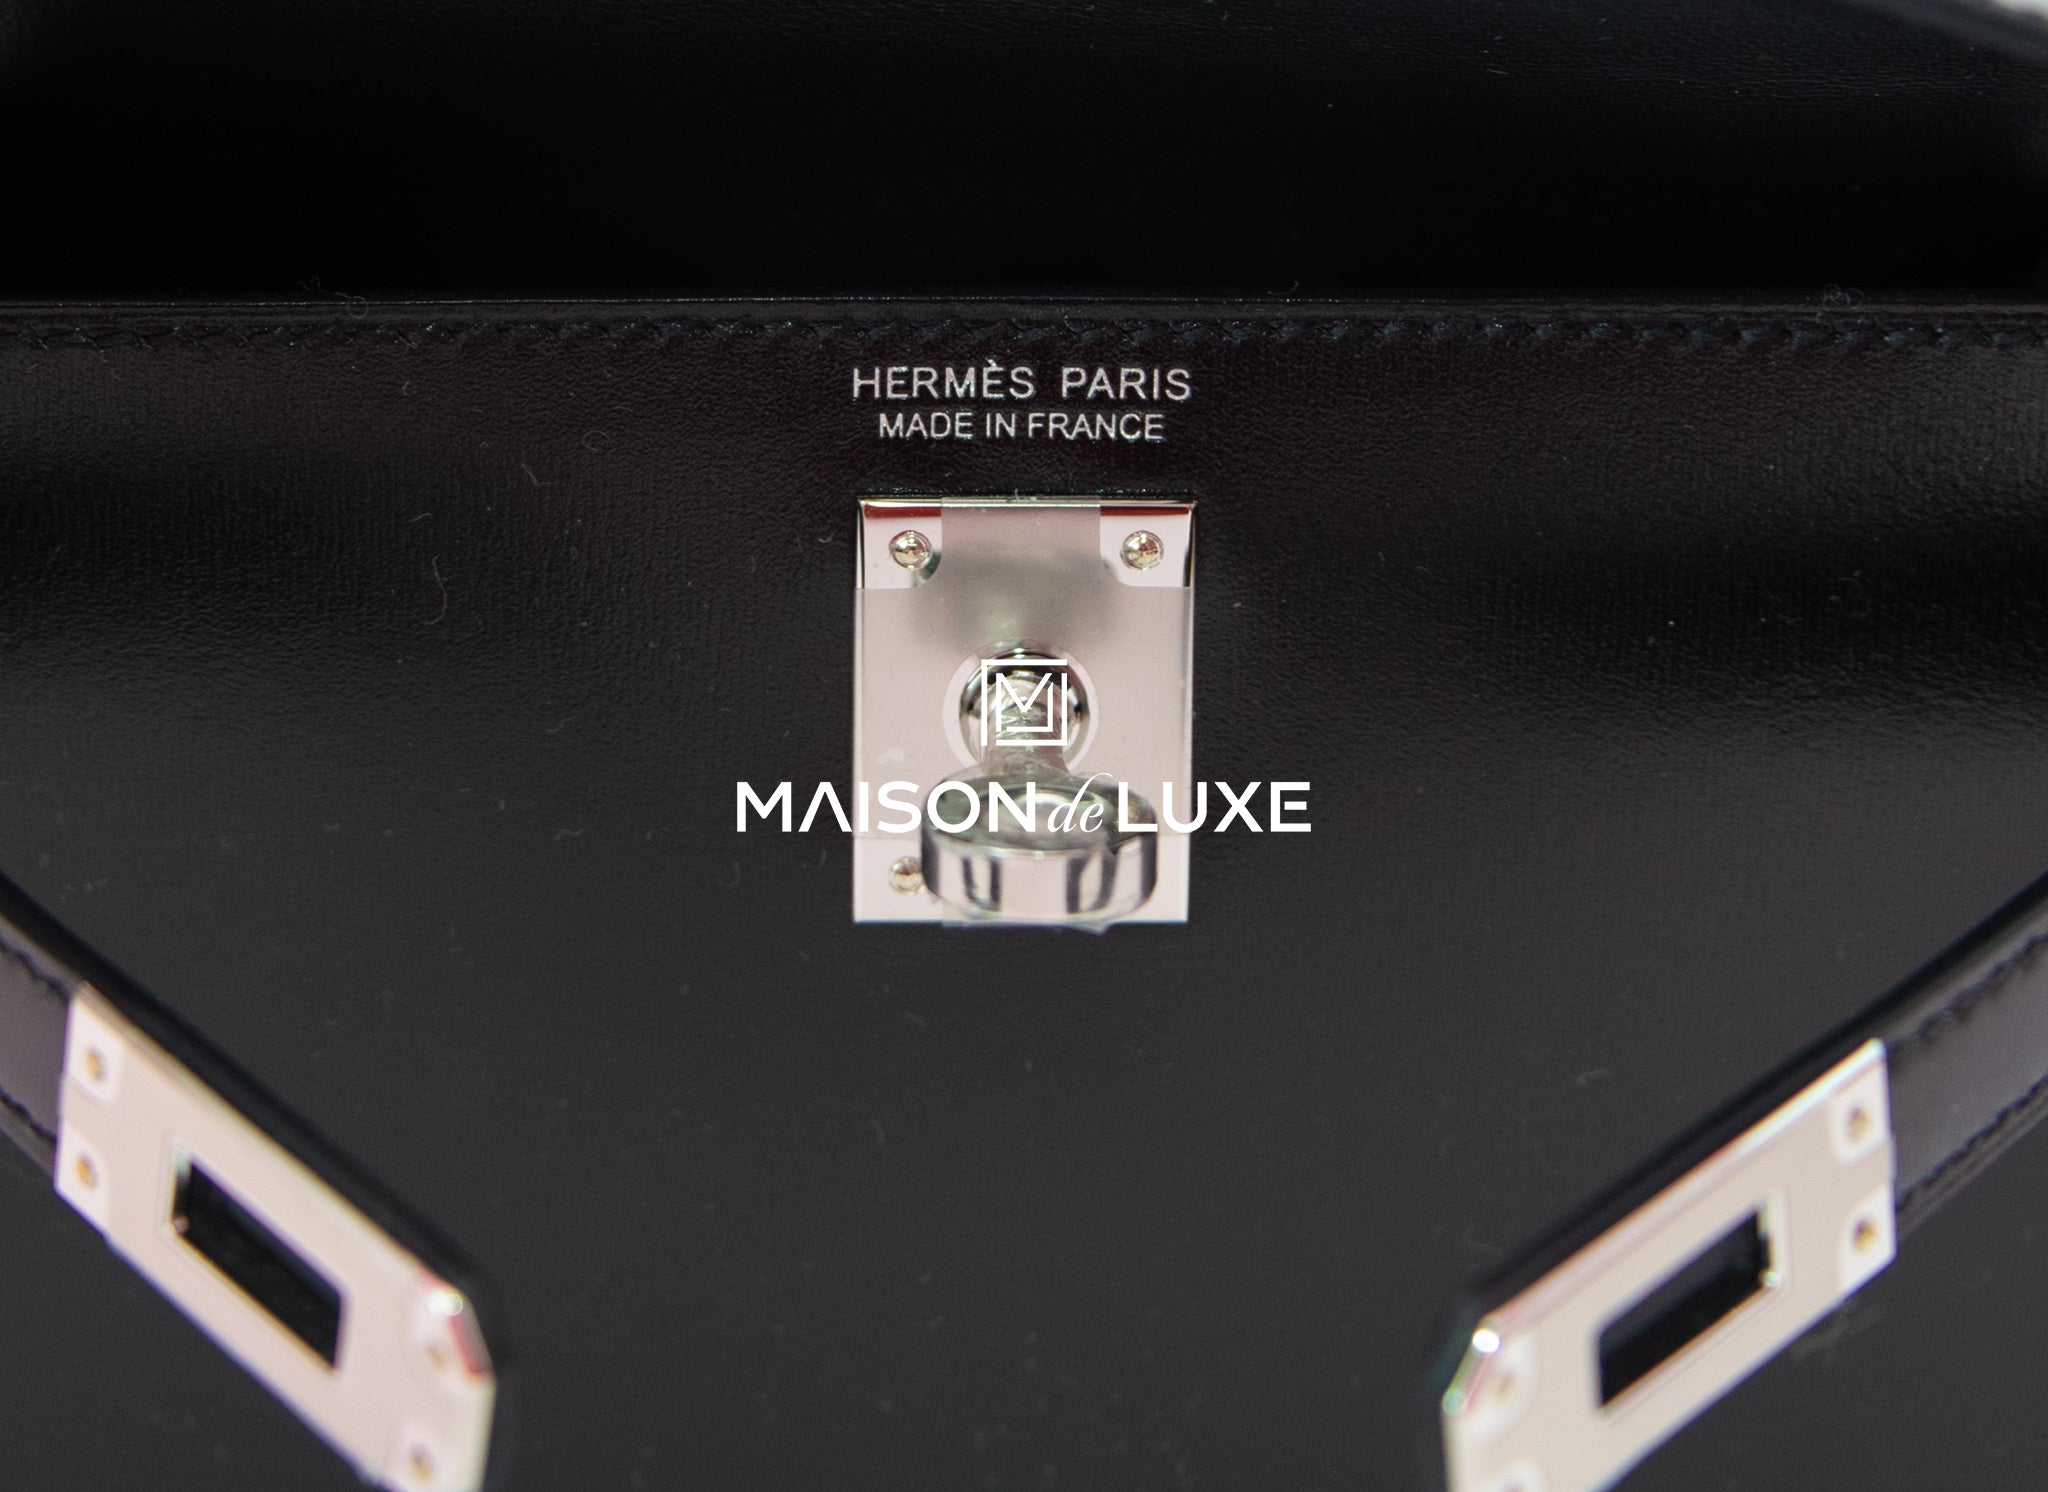 Hermes Mini Kelly II 20 Black Box Leather Palladium Hardware Bag